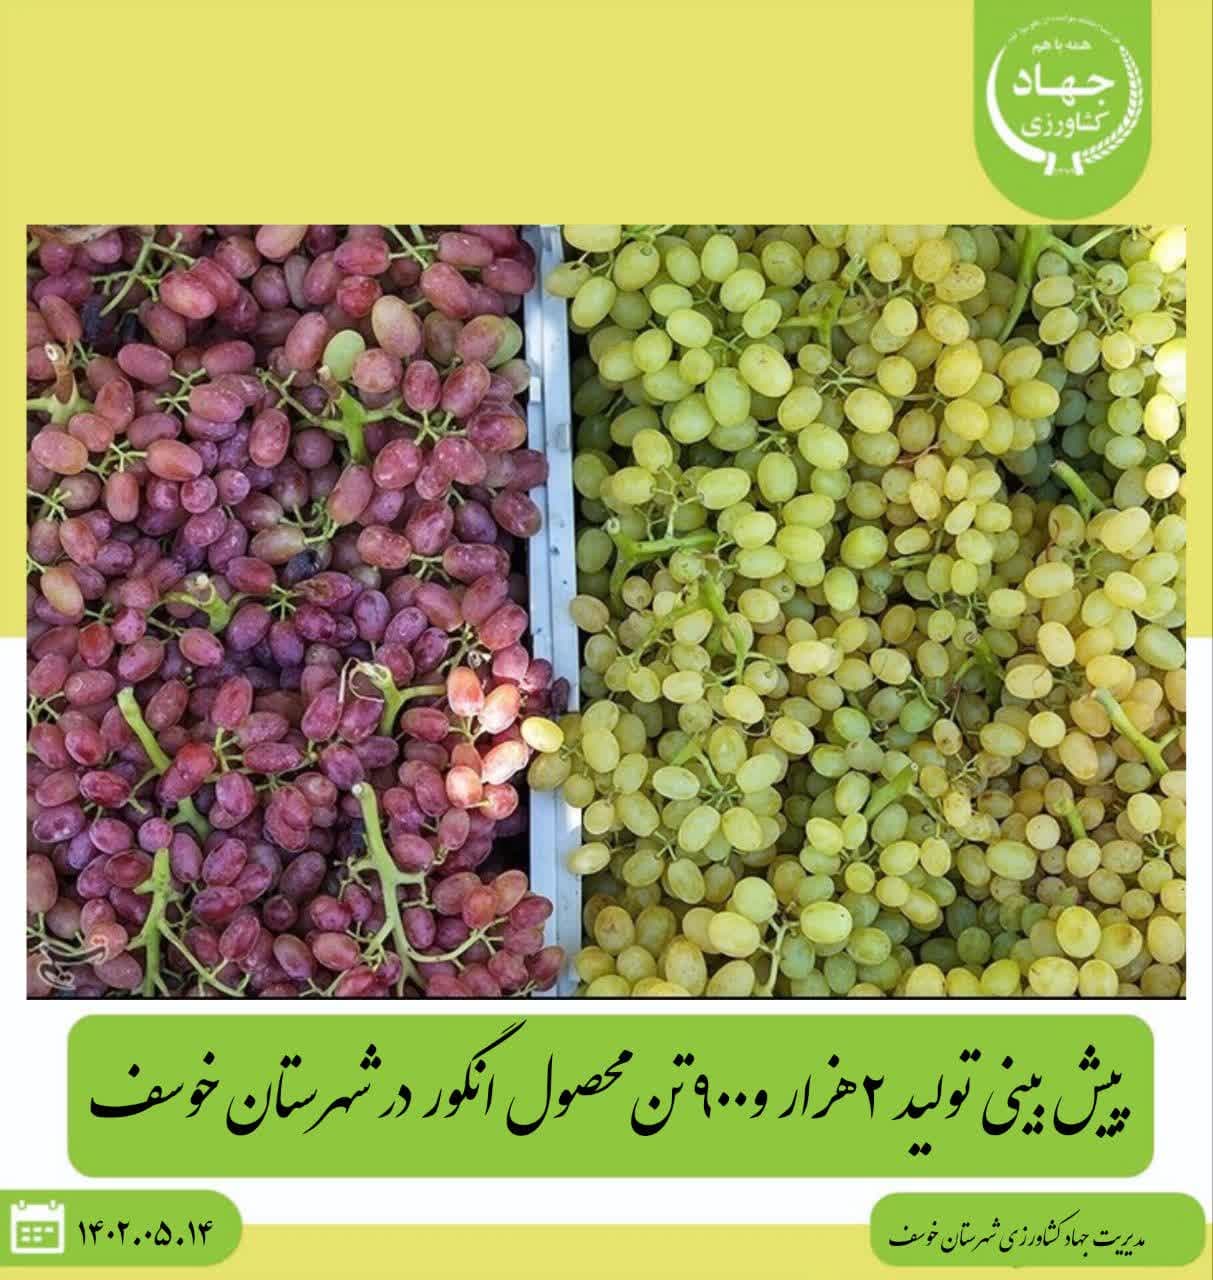 پیش بینی تولید ۲هزار و۹۰۰ تن محصول انگور در شهرستان خوسف